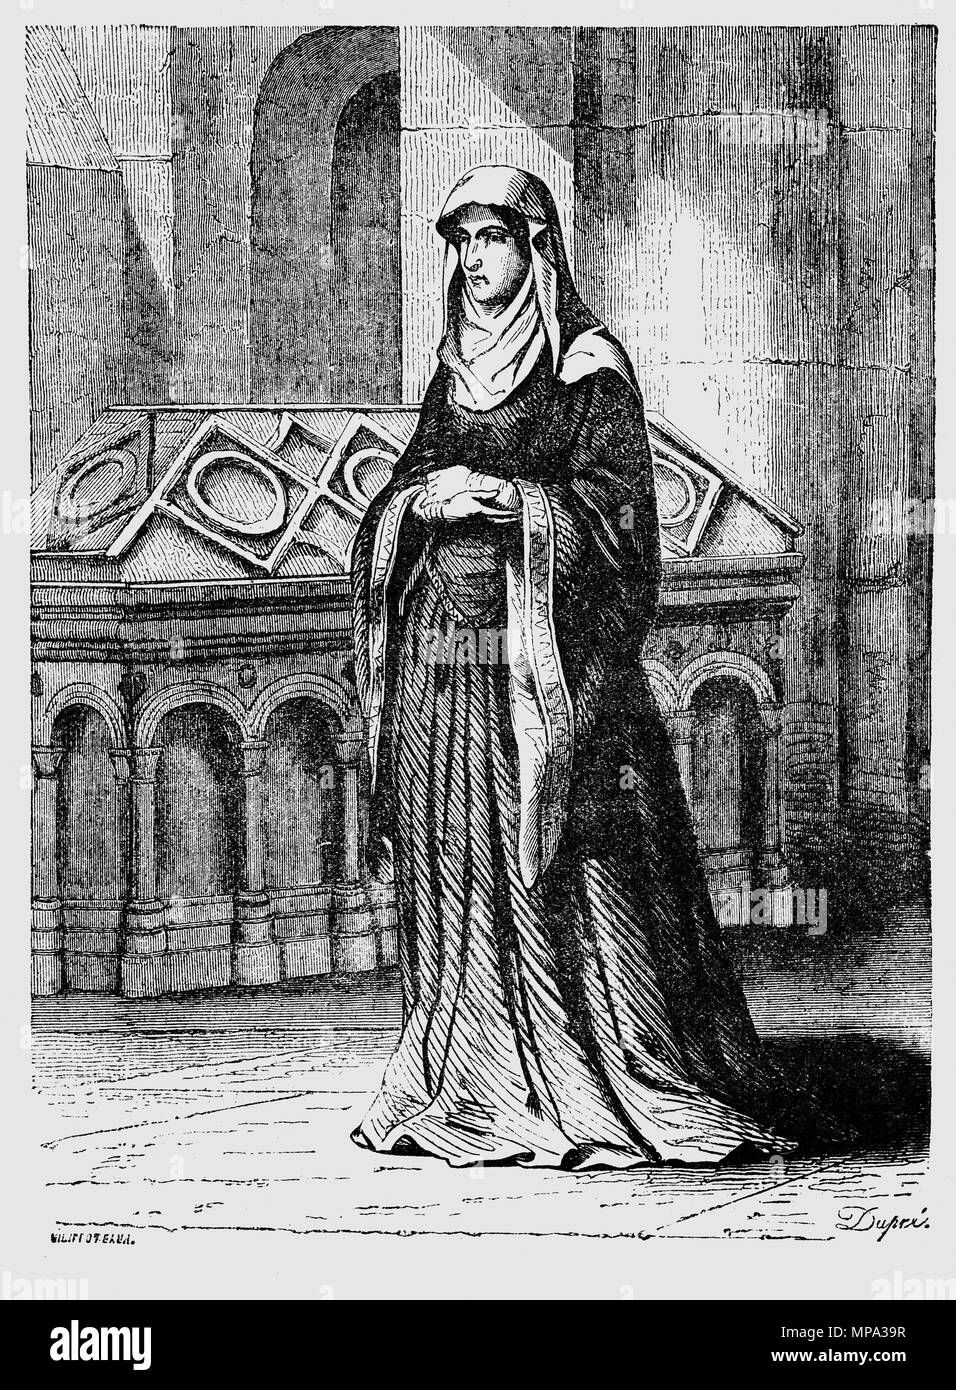 Matilda von Schottland (1080-1118), ursprünglich die Kleinkindtaufe Edith, war die Tochter des schottischen Königs Malcolm III. und Königin von England als die erste Frau von König Heinrich I., nachdem sie Ende 1100 geheiratet. Sie führte ein literarisches und musikalisches Gericht, sondern war auch fromme und auf den Aufbau von Projekten für die Kirche begonnen. Matilda fungierte als Regent Englands in der Abwesenheit ihres Gatten mehrmals und nahm eine Rolle in der Regierung als ihr Mann entfernt war. Viele überlebende Chartas wurden von ihr unterzeichnet. Stockfoto